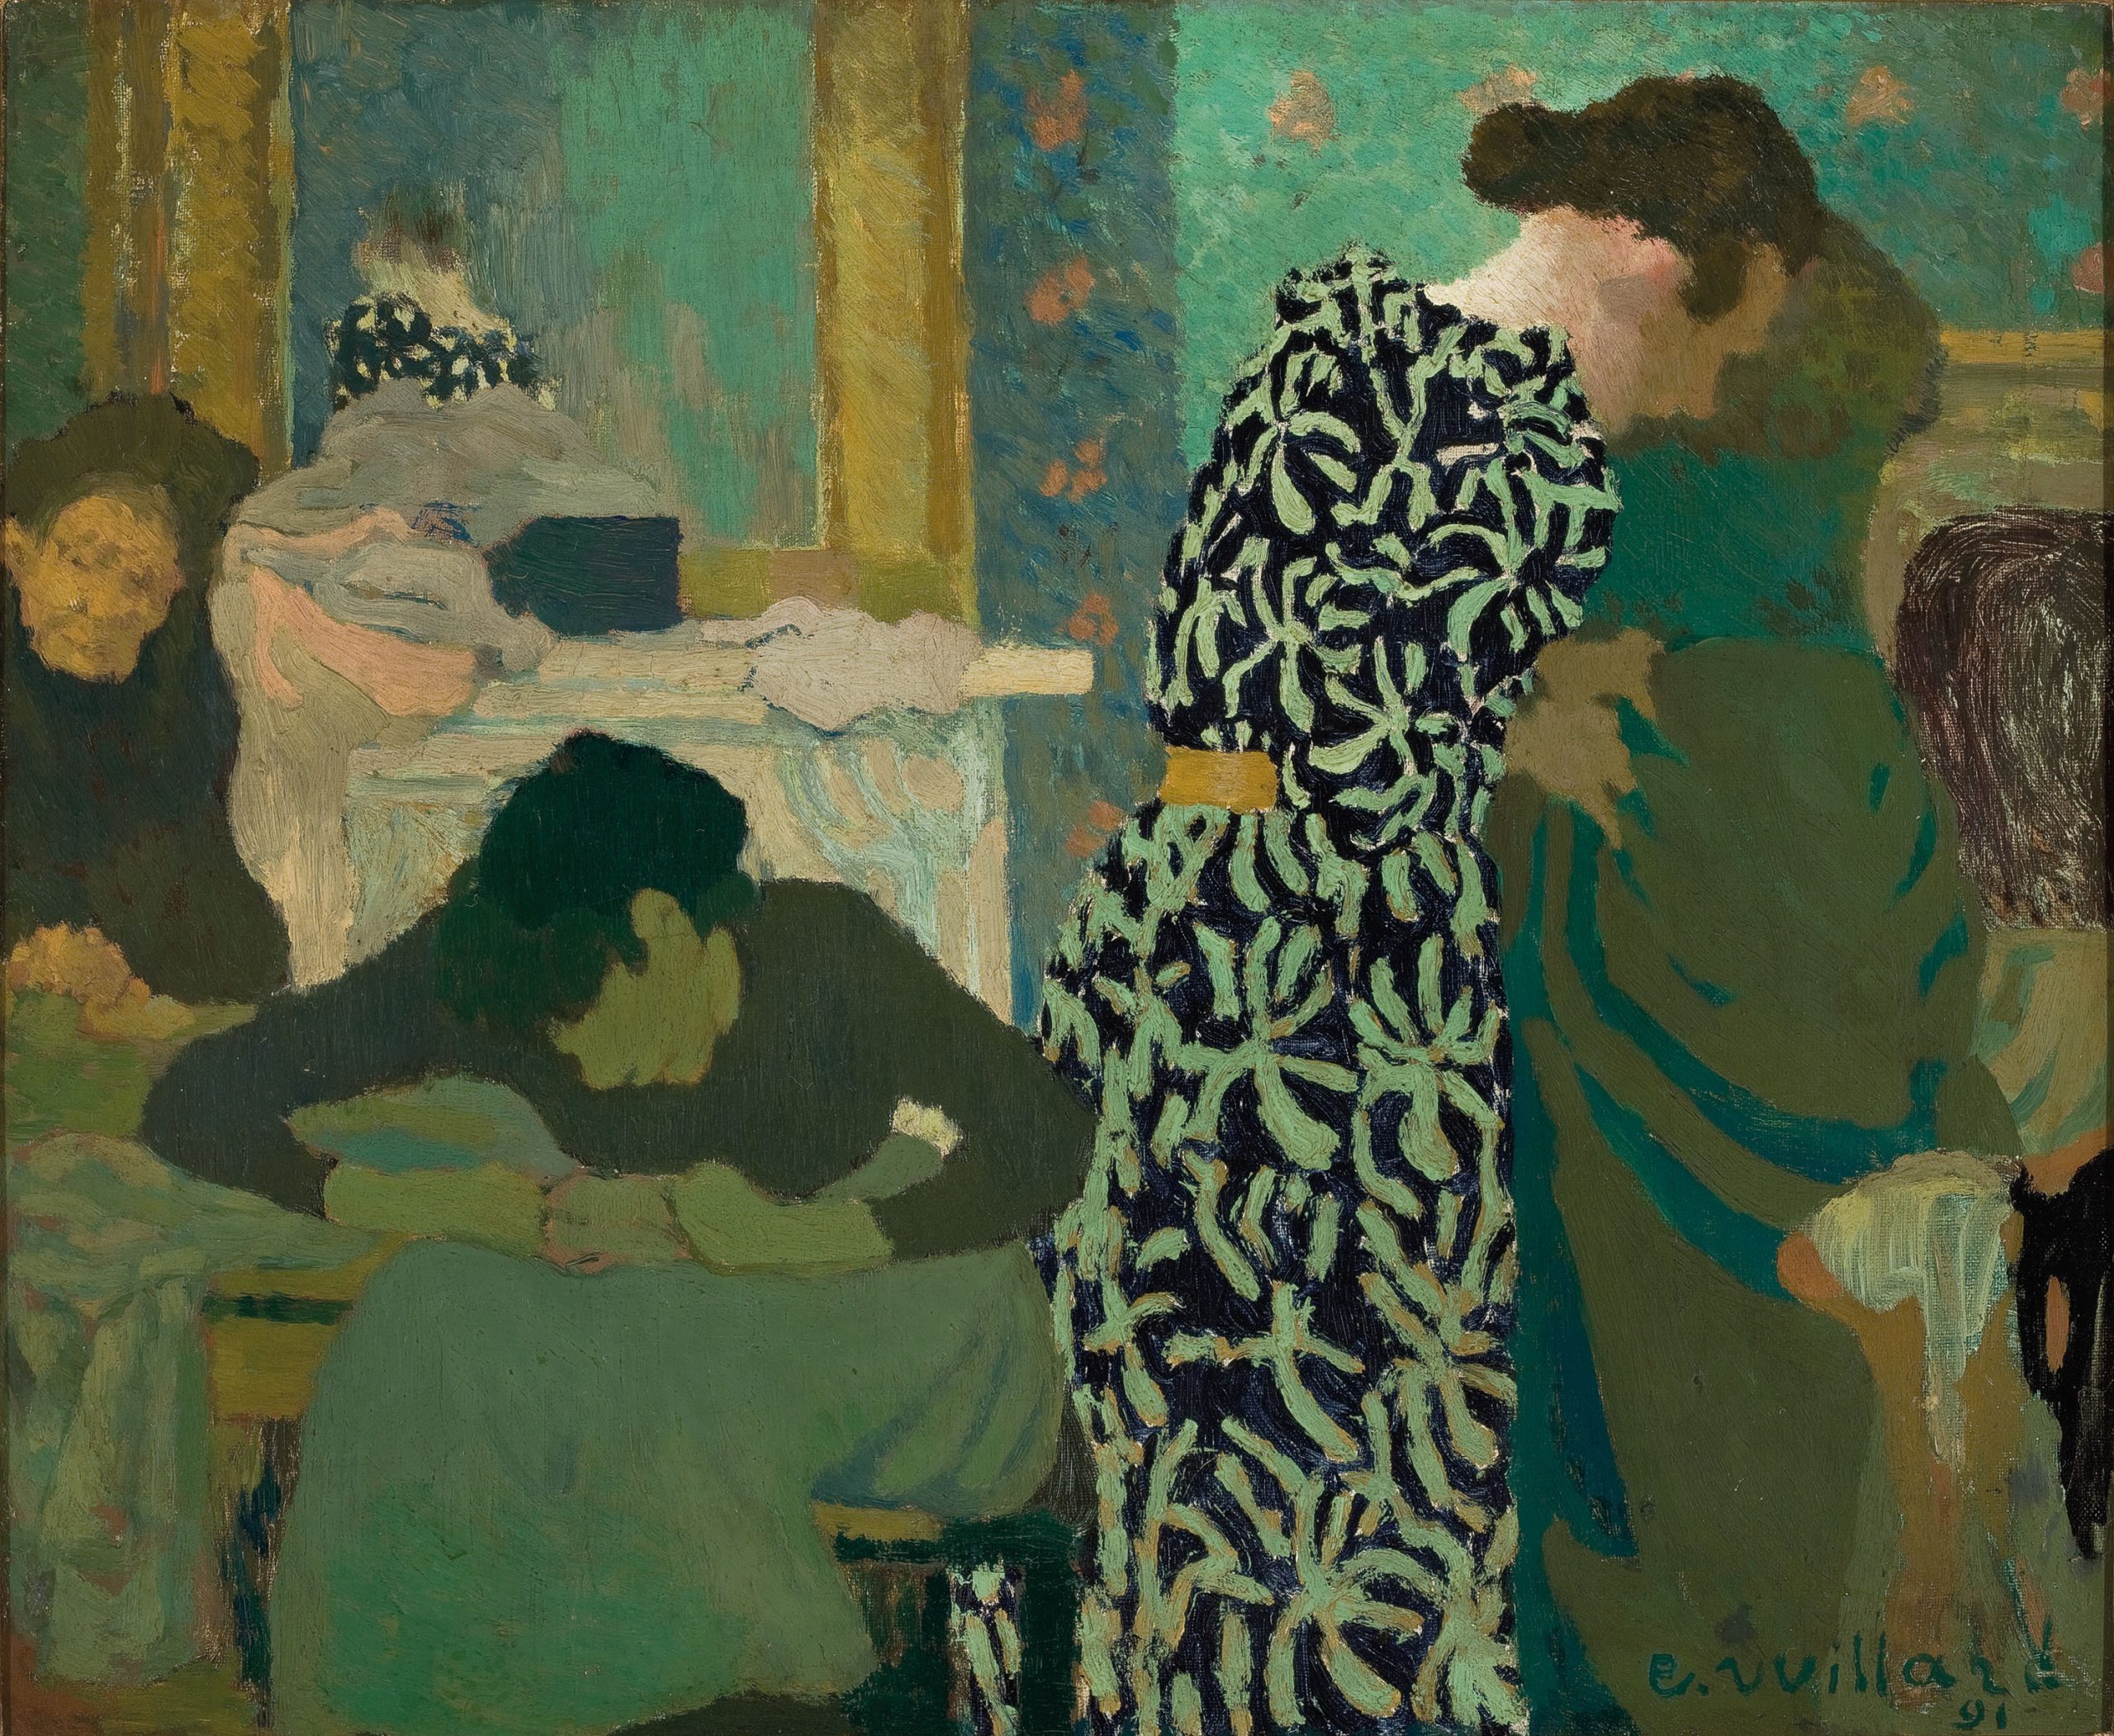 La collection permanente : le portrait de famille teinté de vert de Vuillard